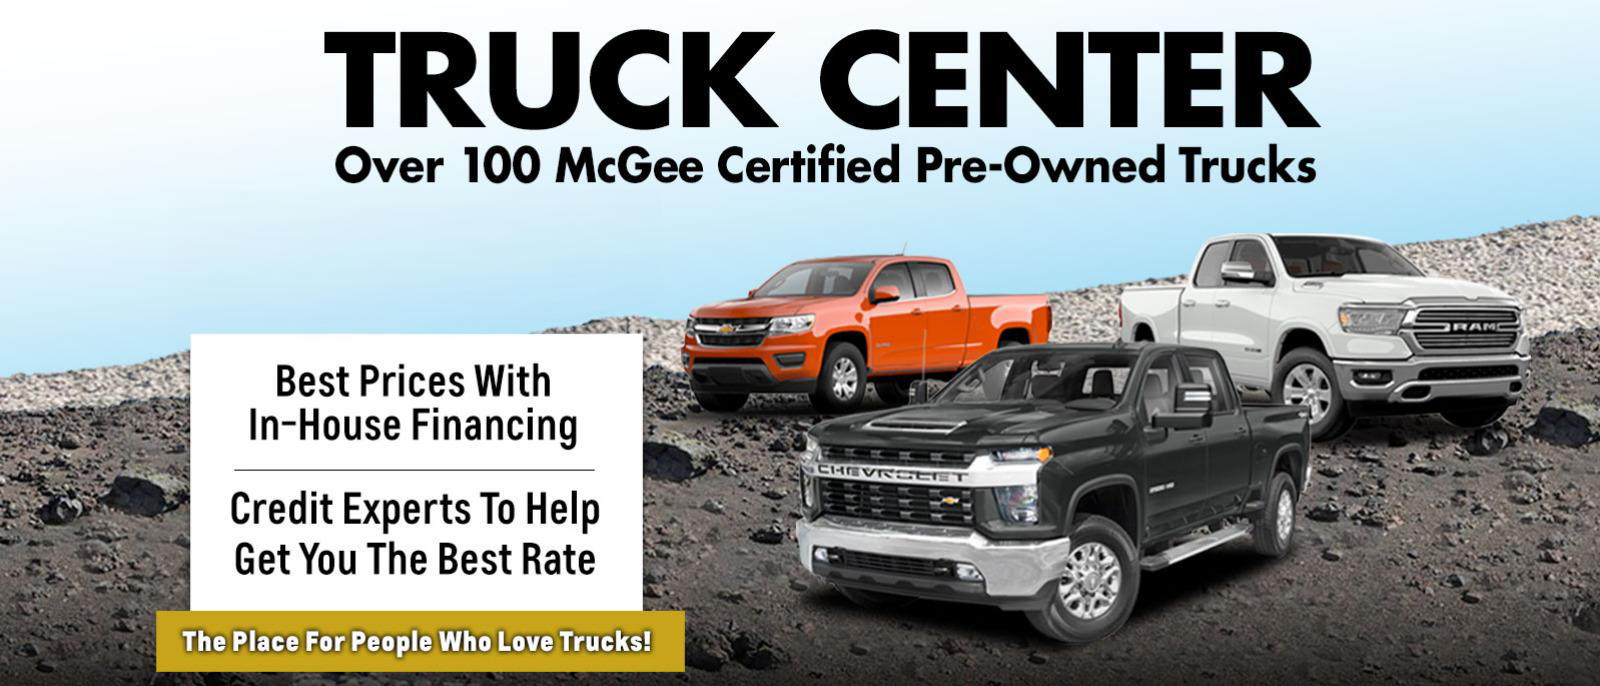 McGee Truck Center